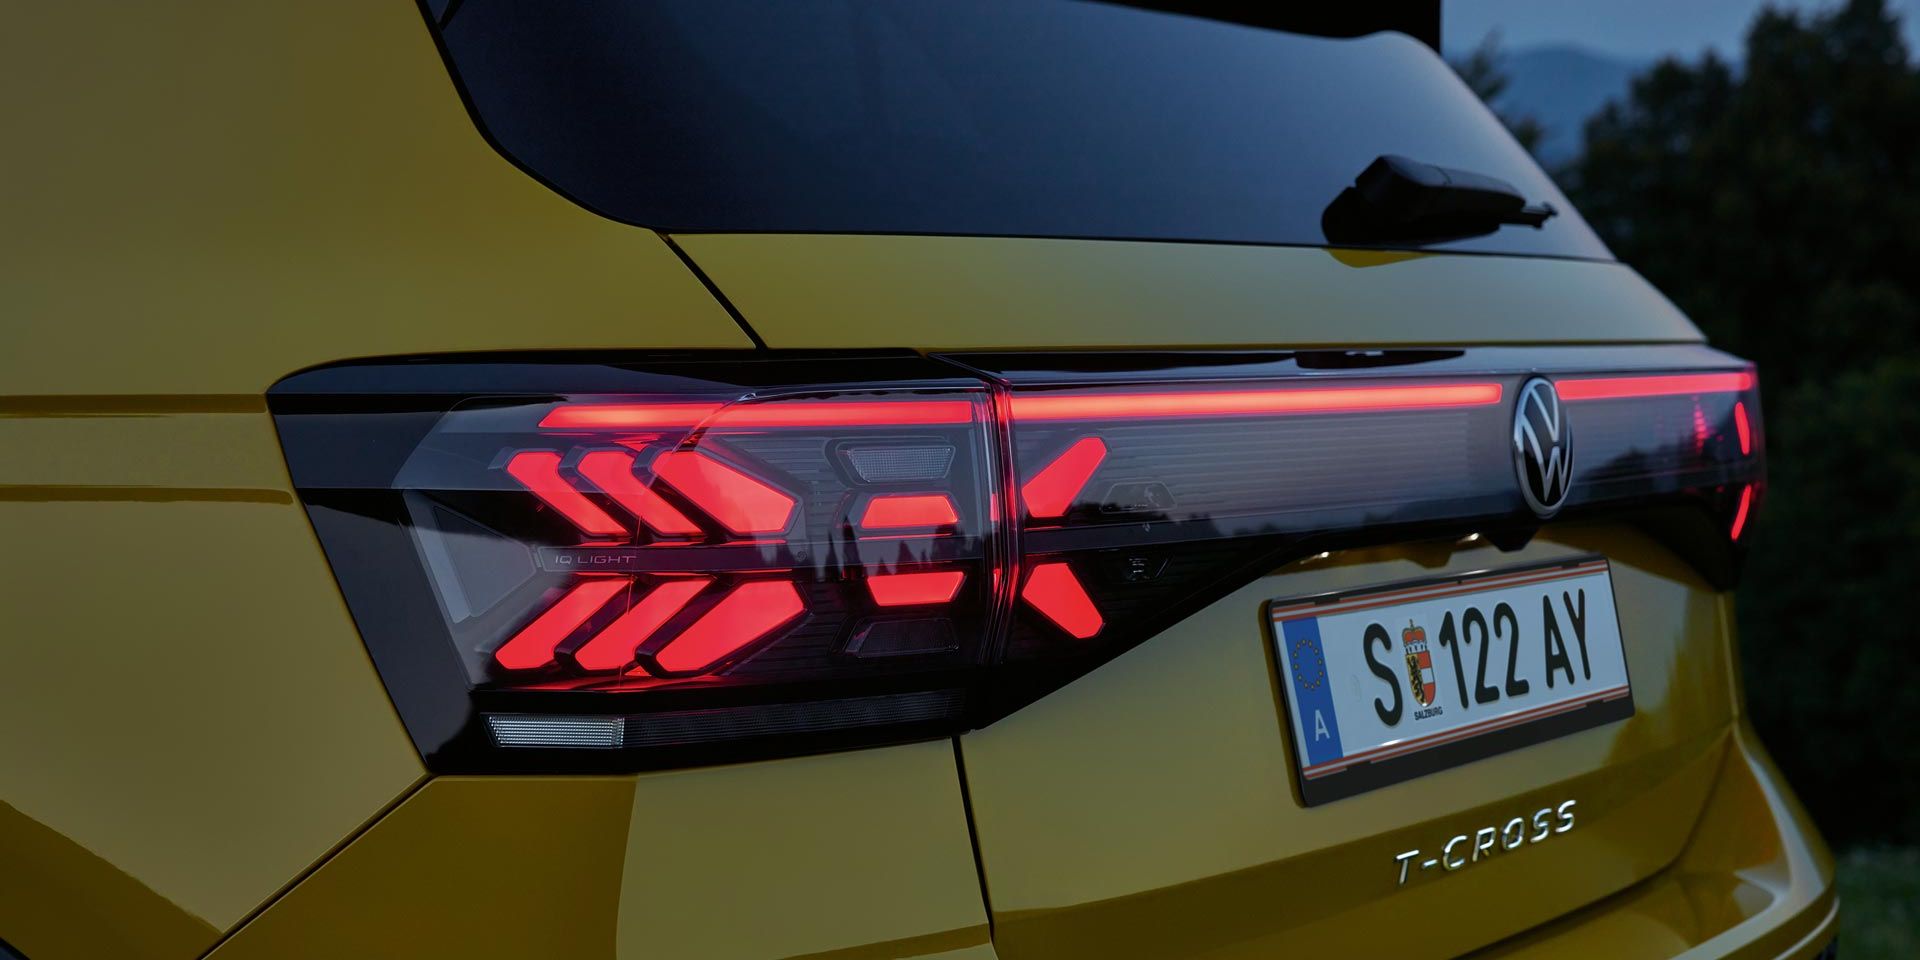 IQ. LIGHT Rückbeleuchtung eines gelben VW T-Cross in Großaufnahme in der Dämmerung.